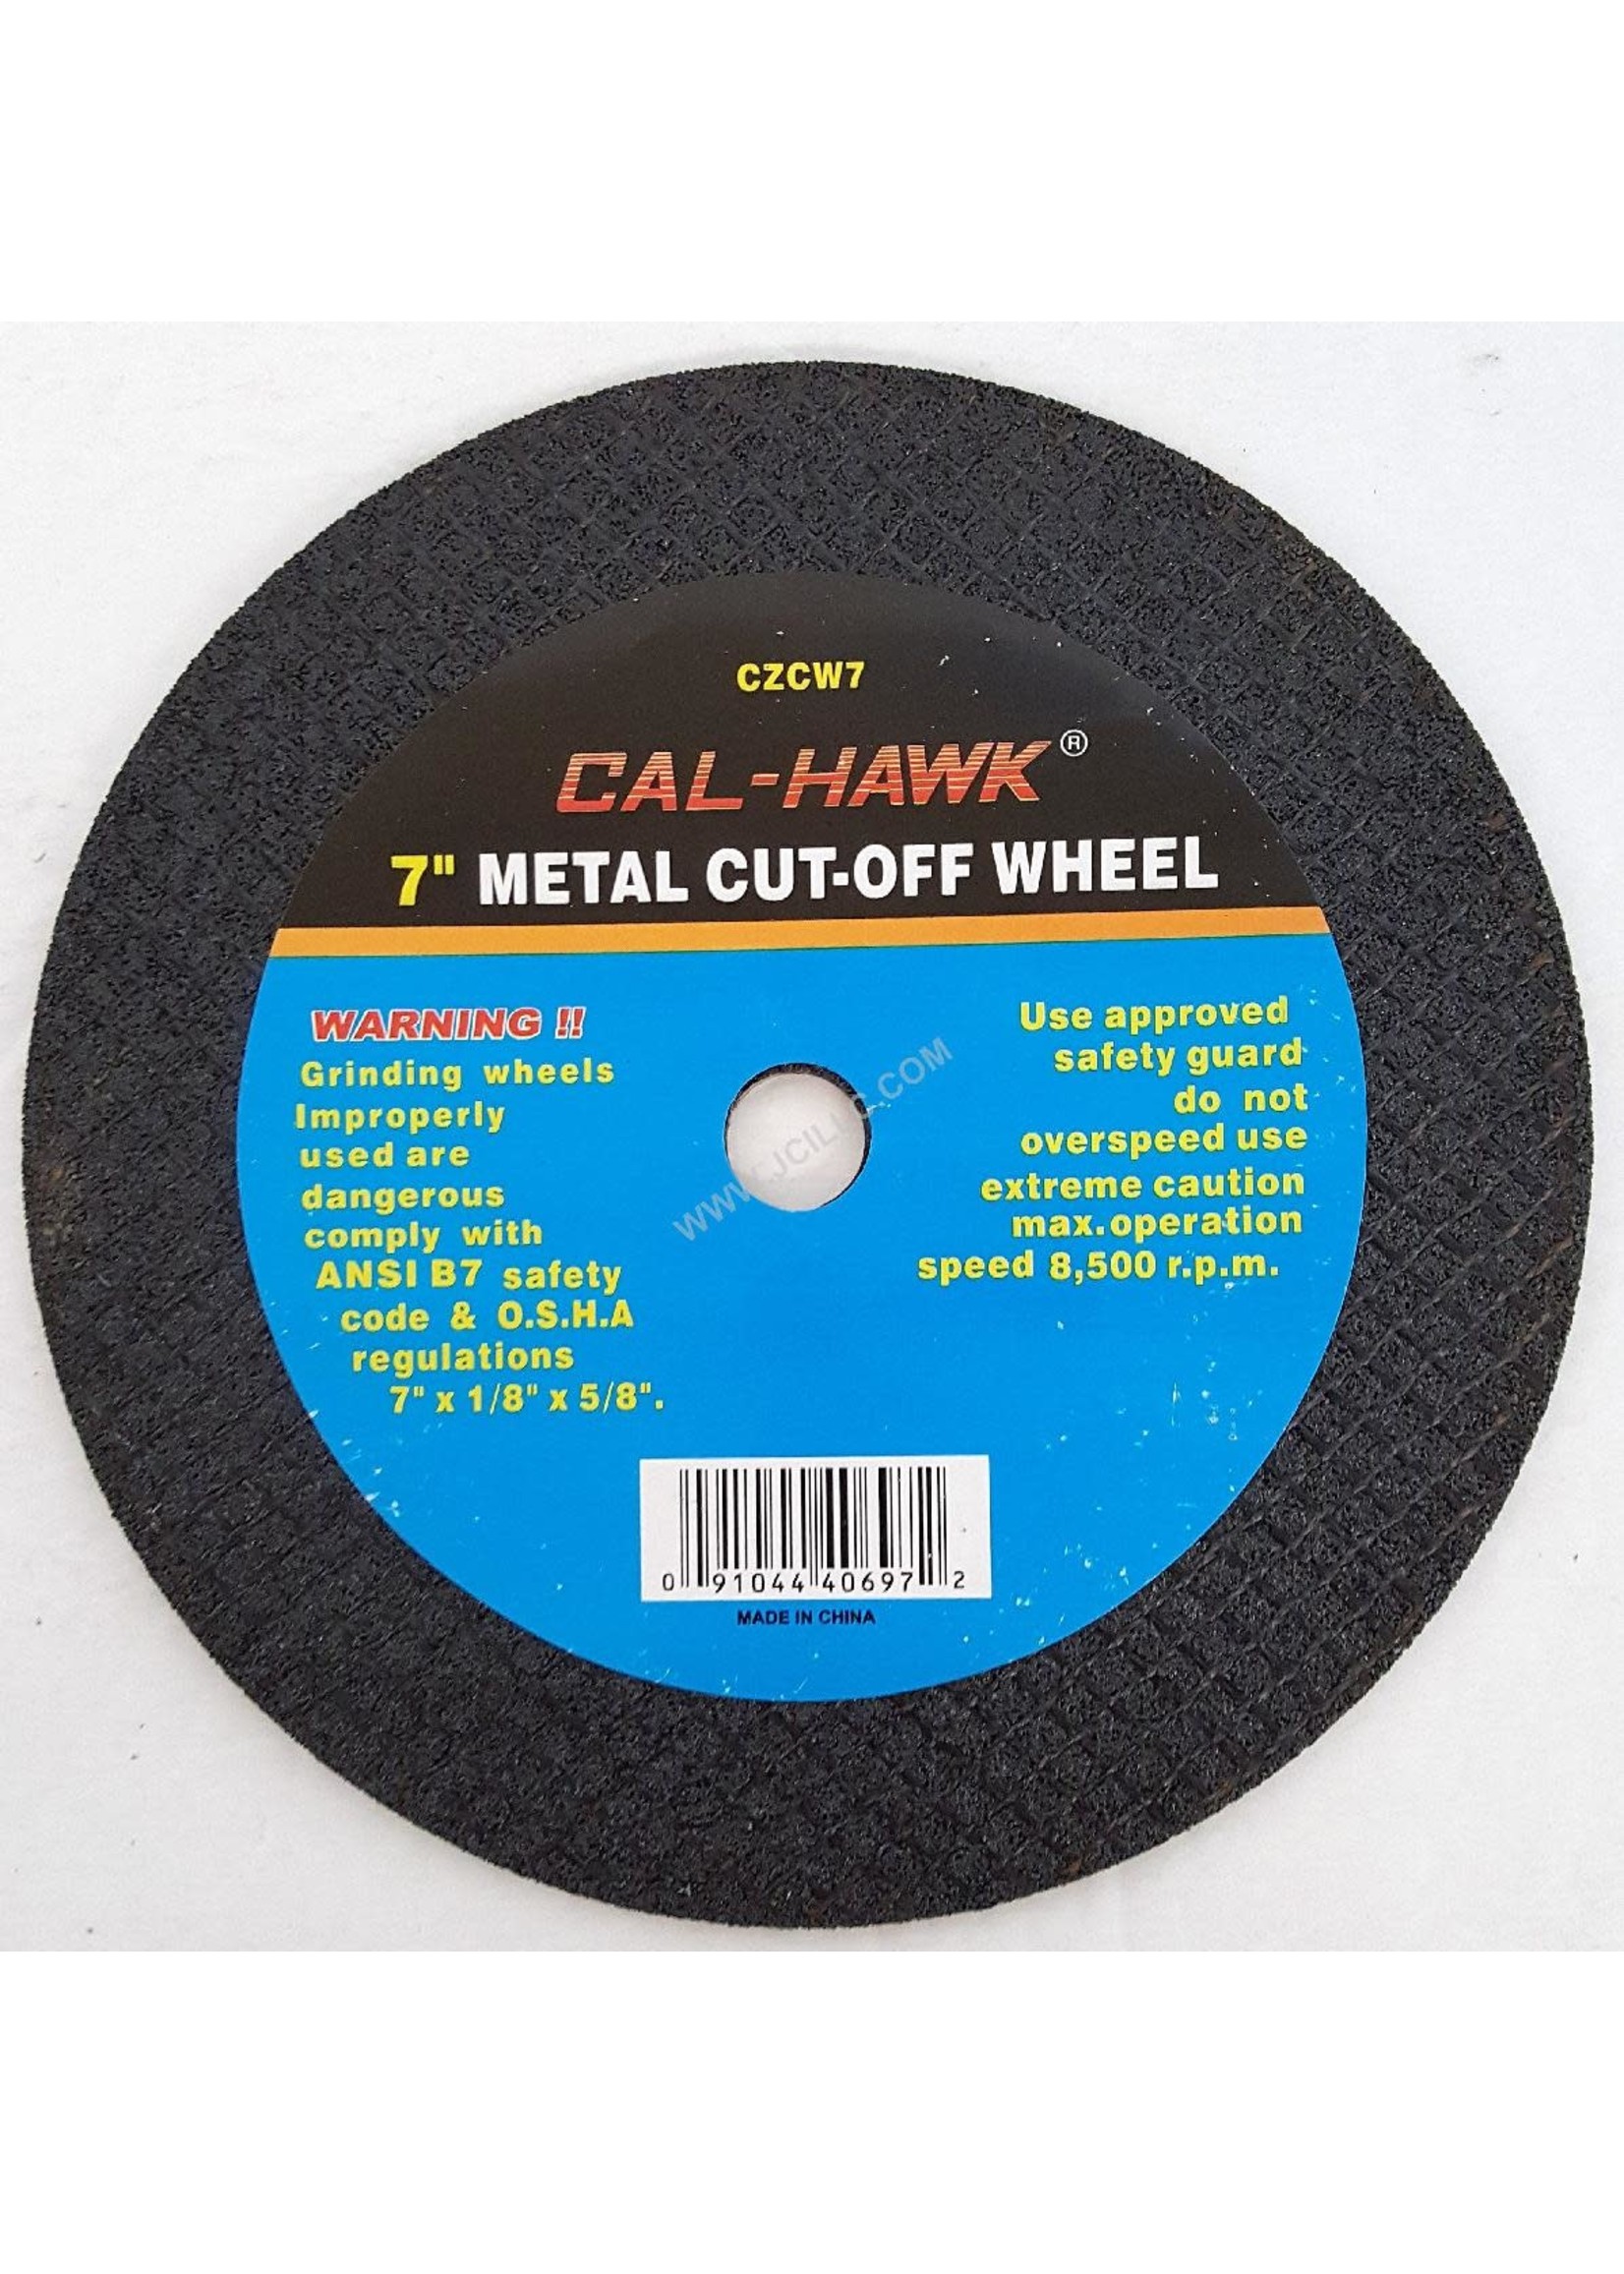 Cal Hawk Cal-Hawk 7" Cut Off Wheel